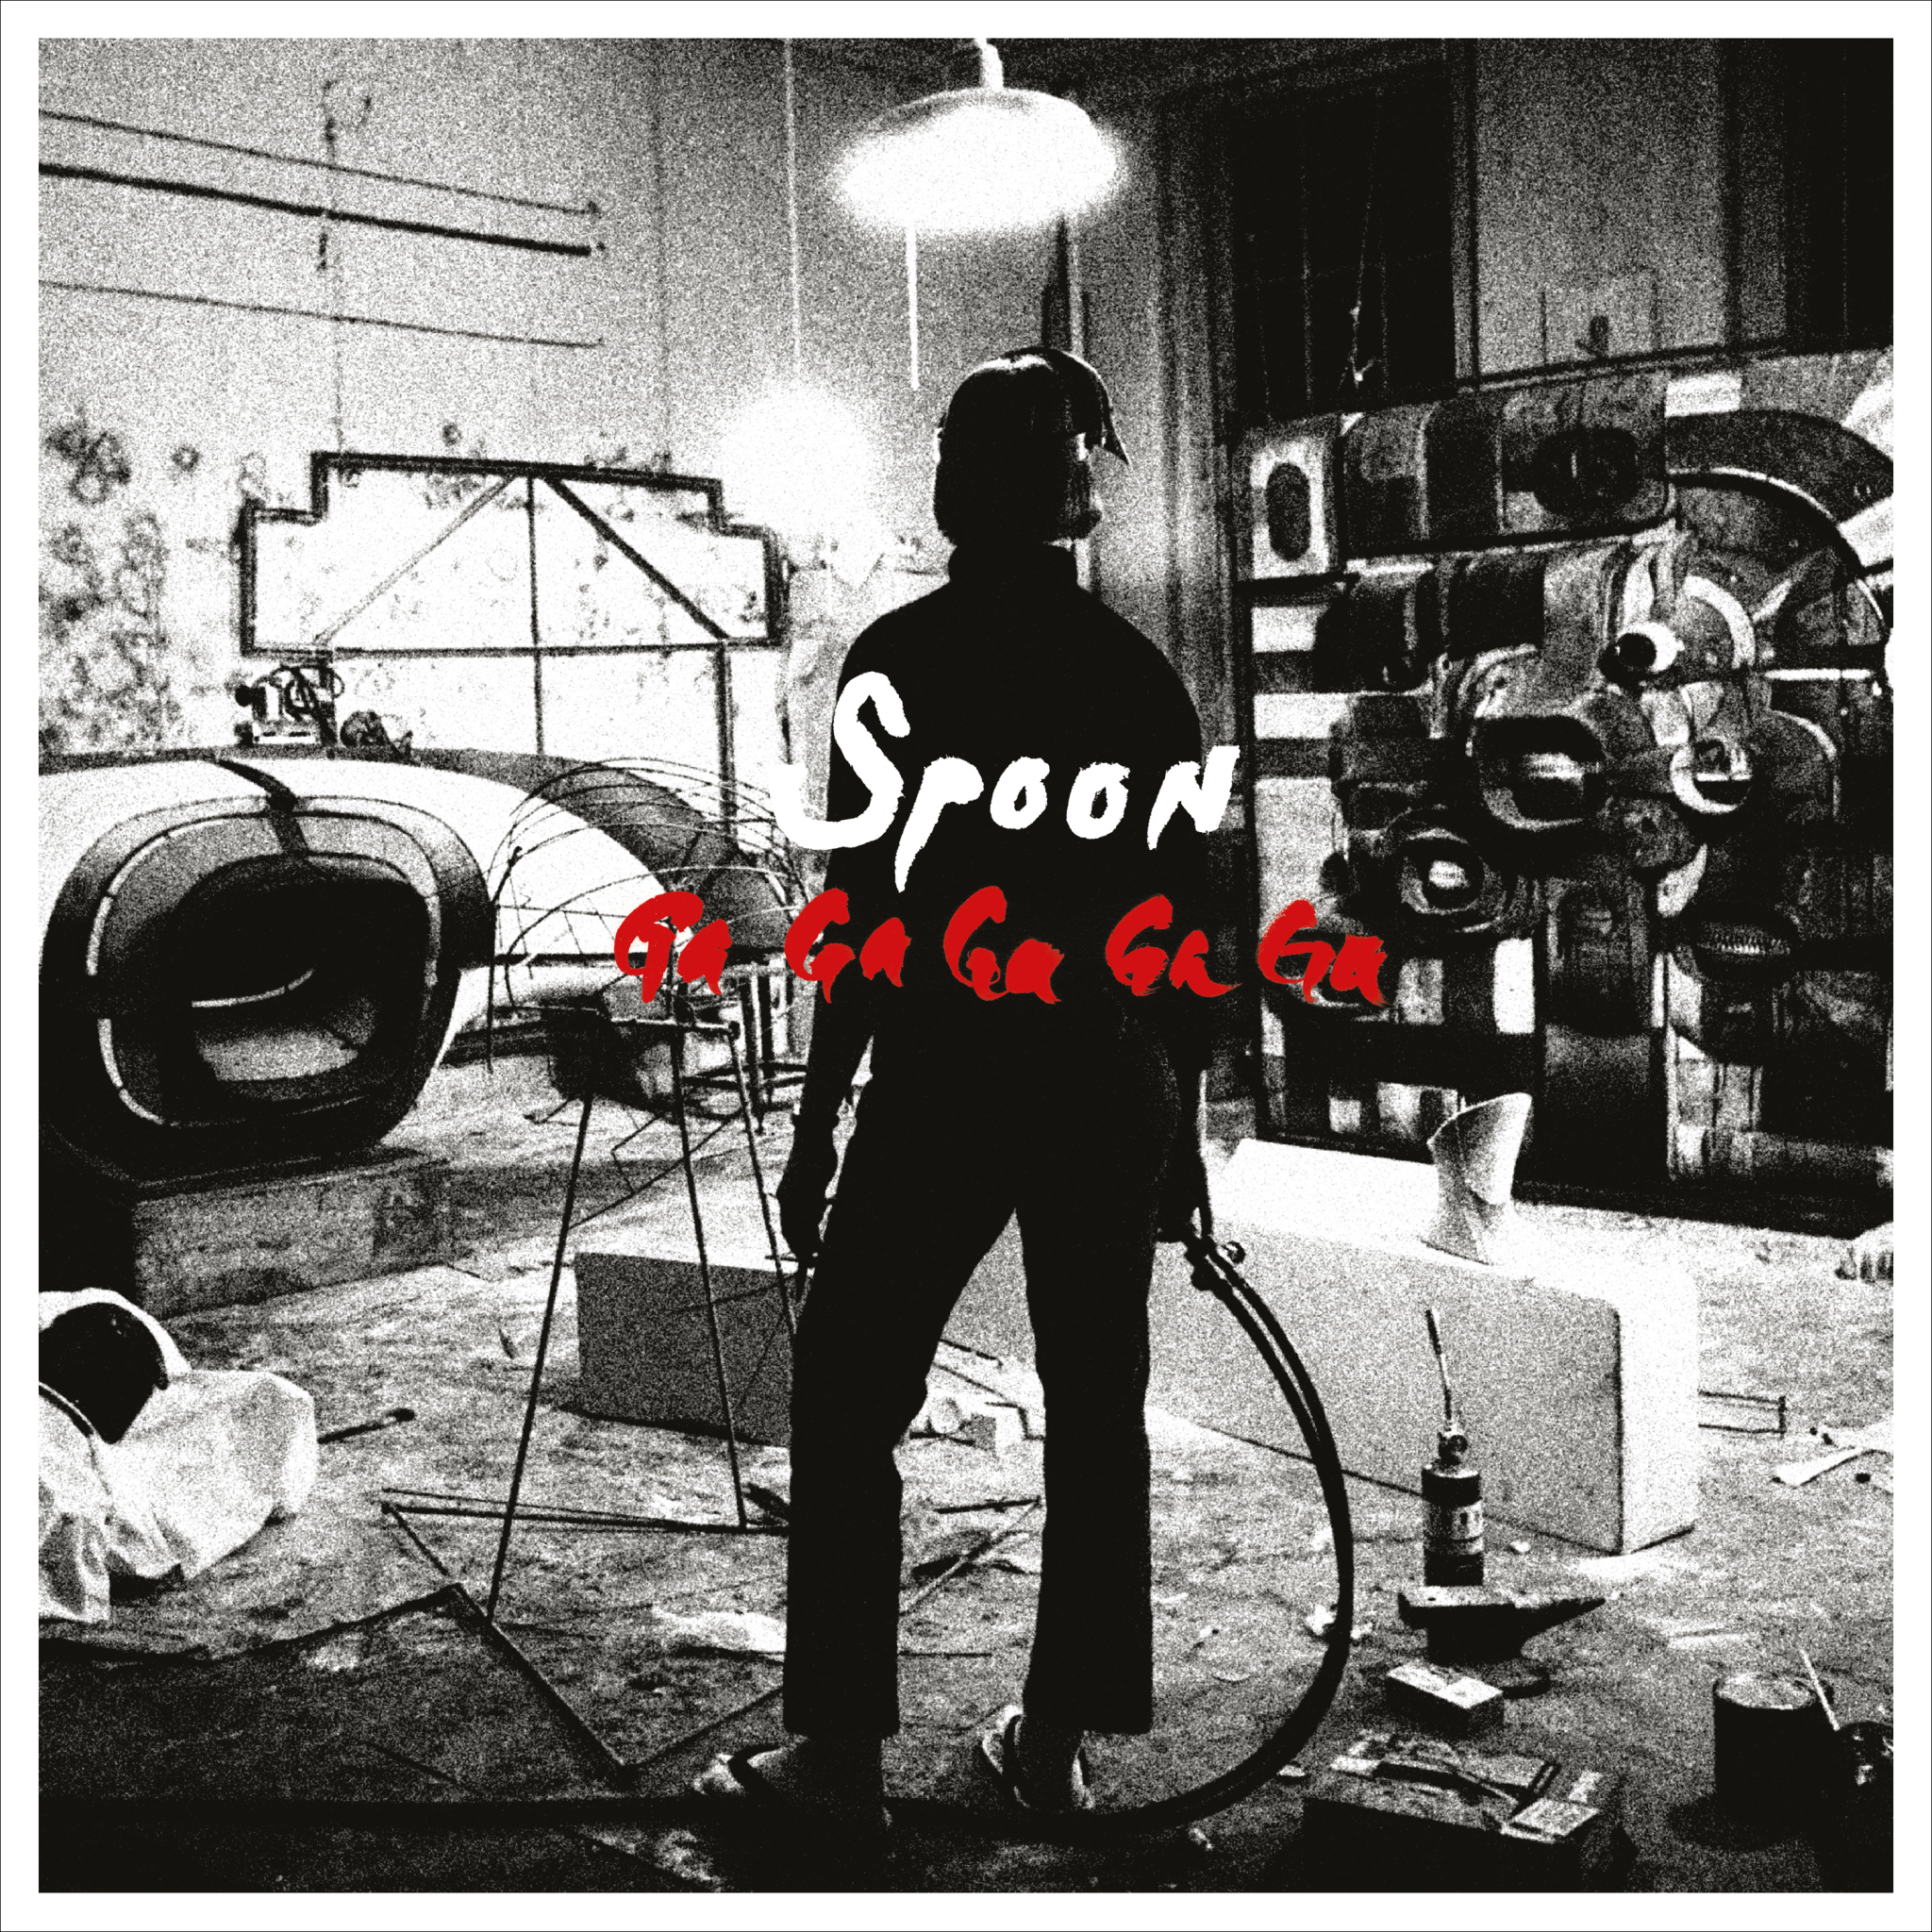 Spoon - GA GA GA GA GA (Re-issue) - CD